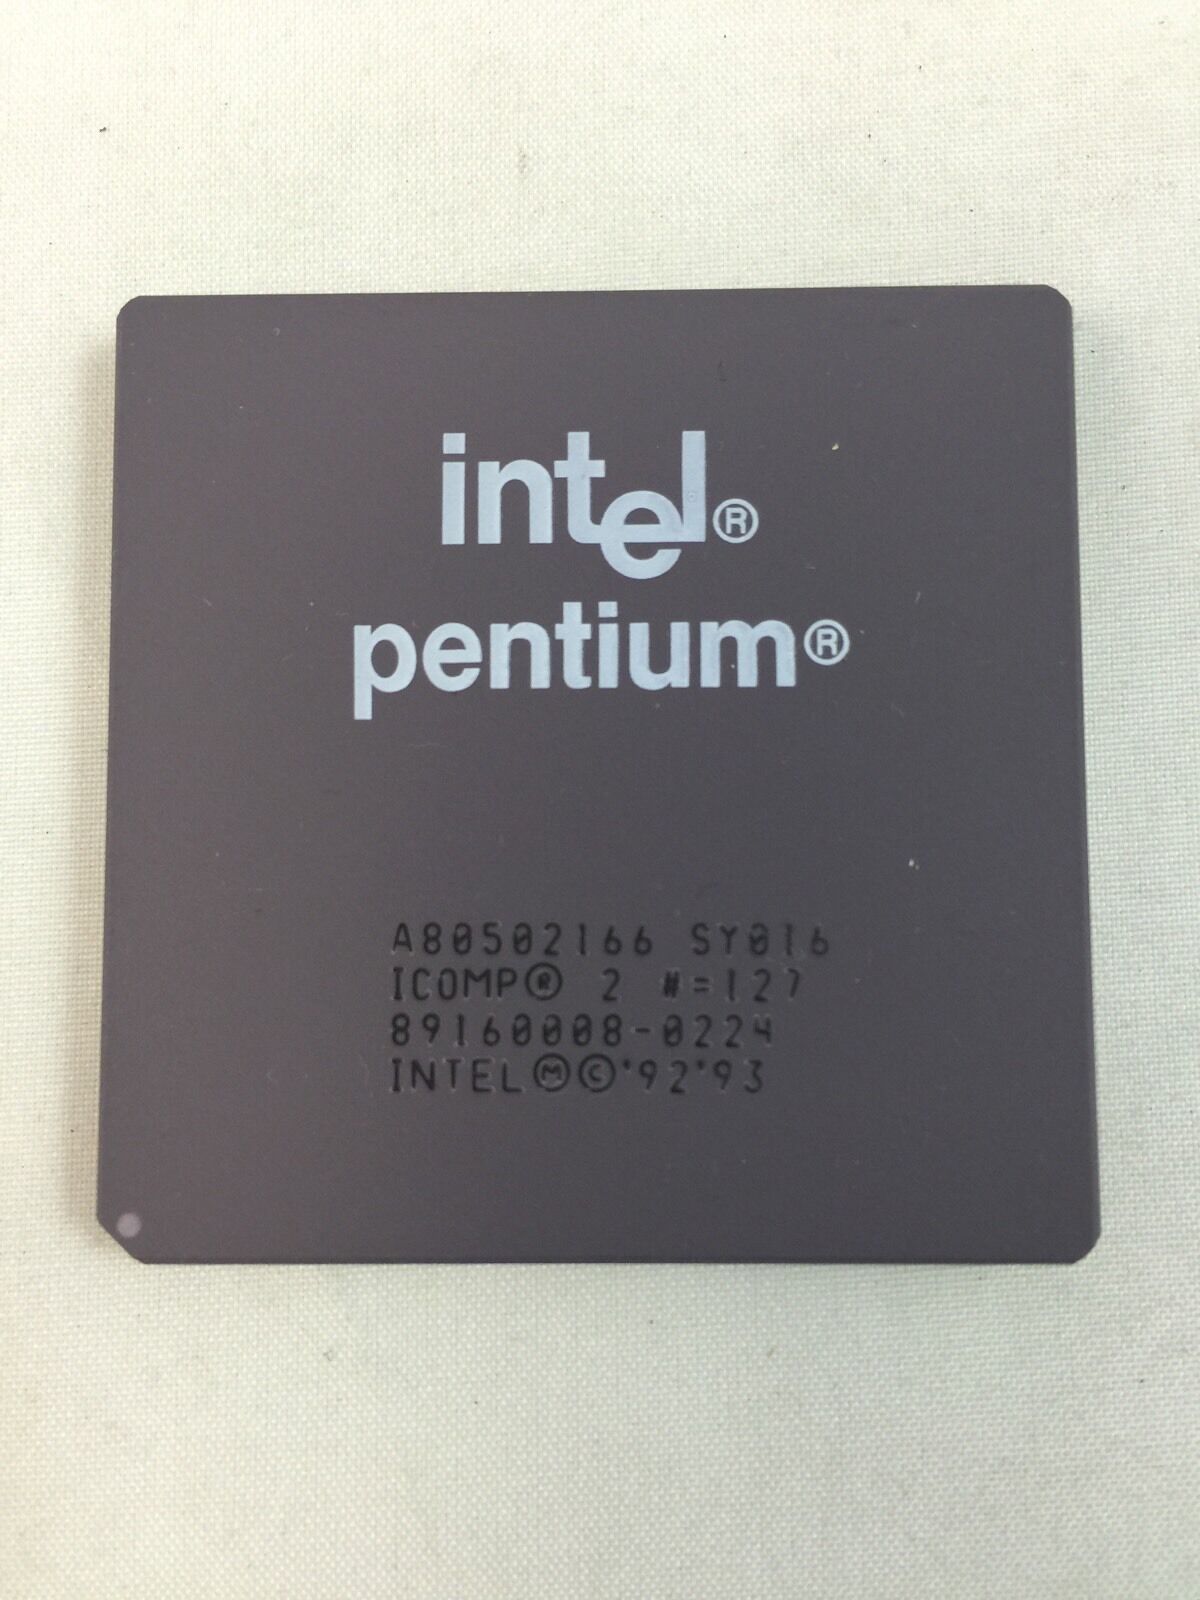 NEW Intel Pentium 166 MHZ CPU Vintage A80502166 1993 Ceramic SY016 SY017 P166